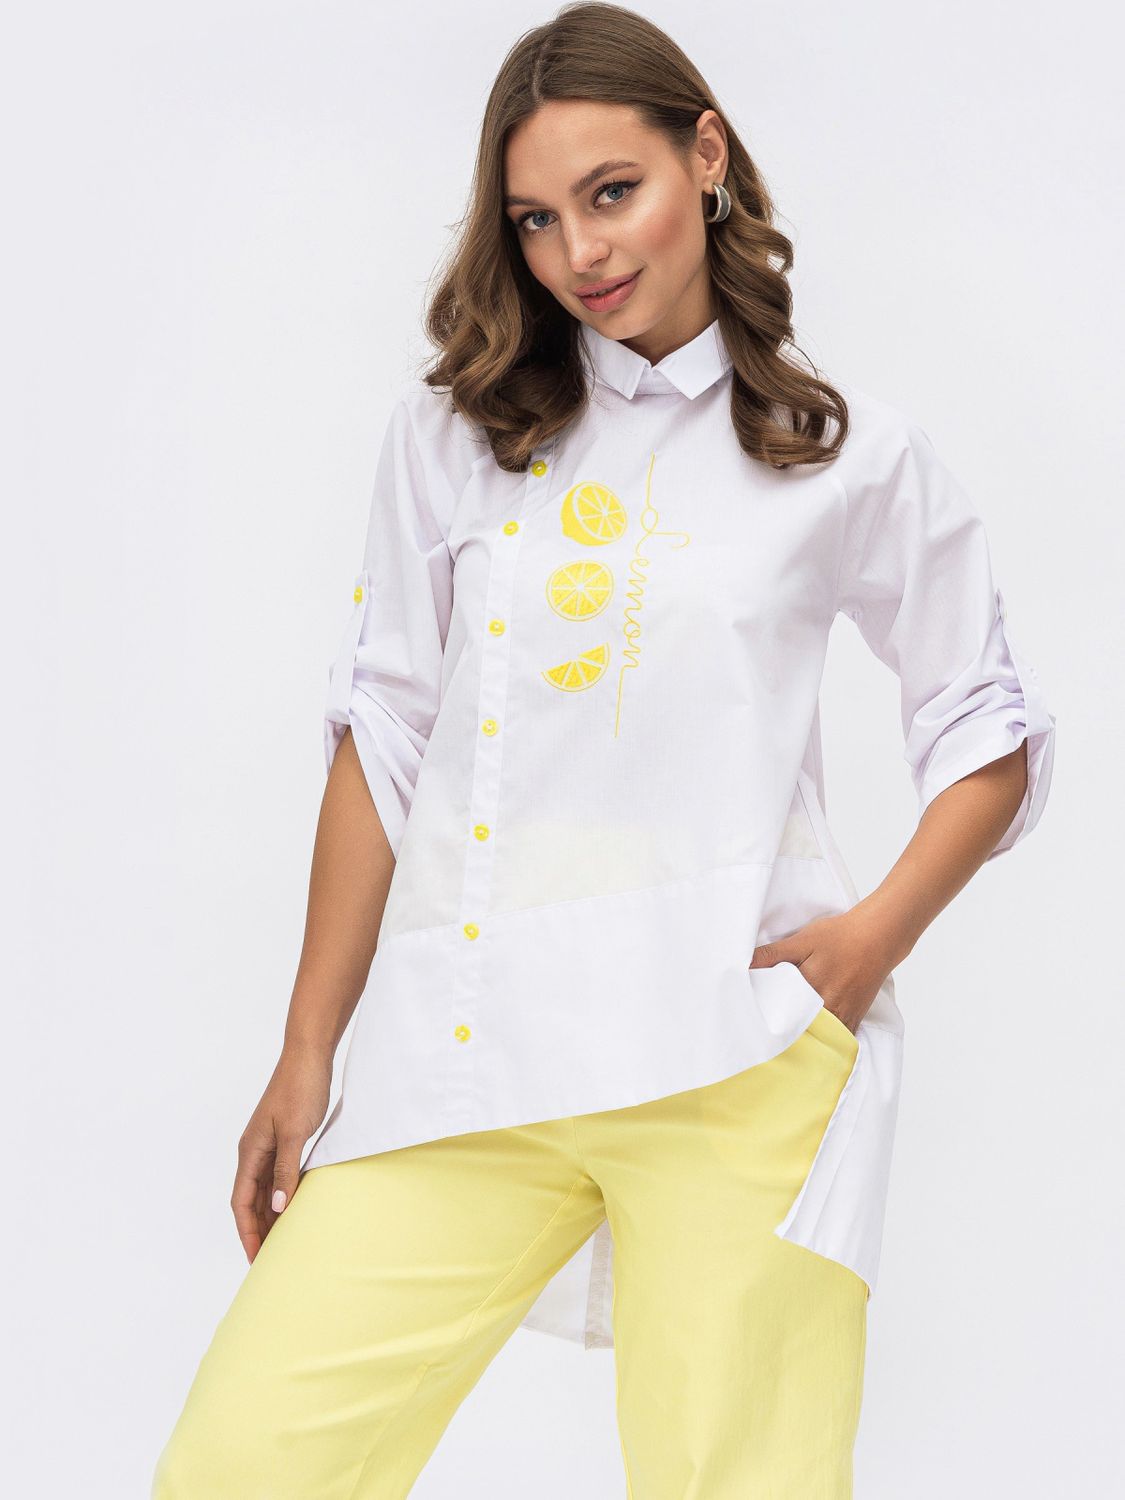 Белая блузка свободного кроя с асимметричным низом - фото